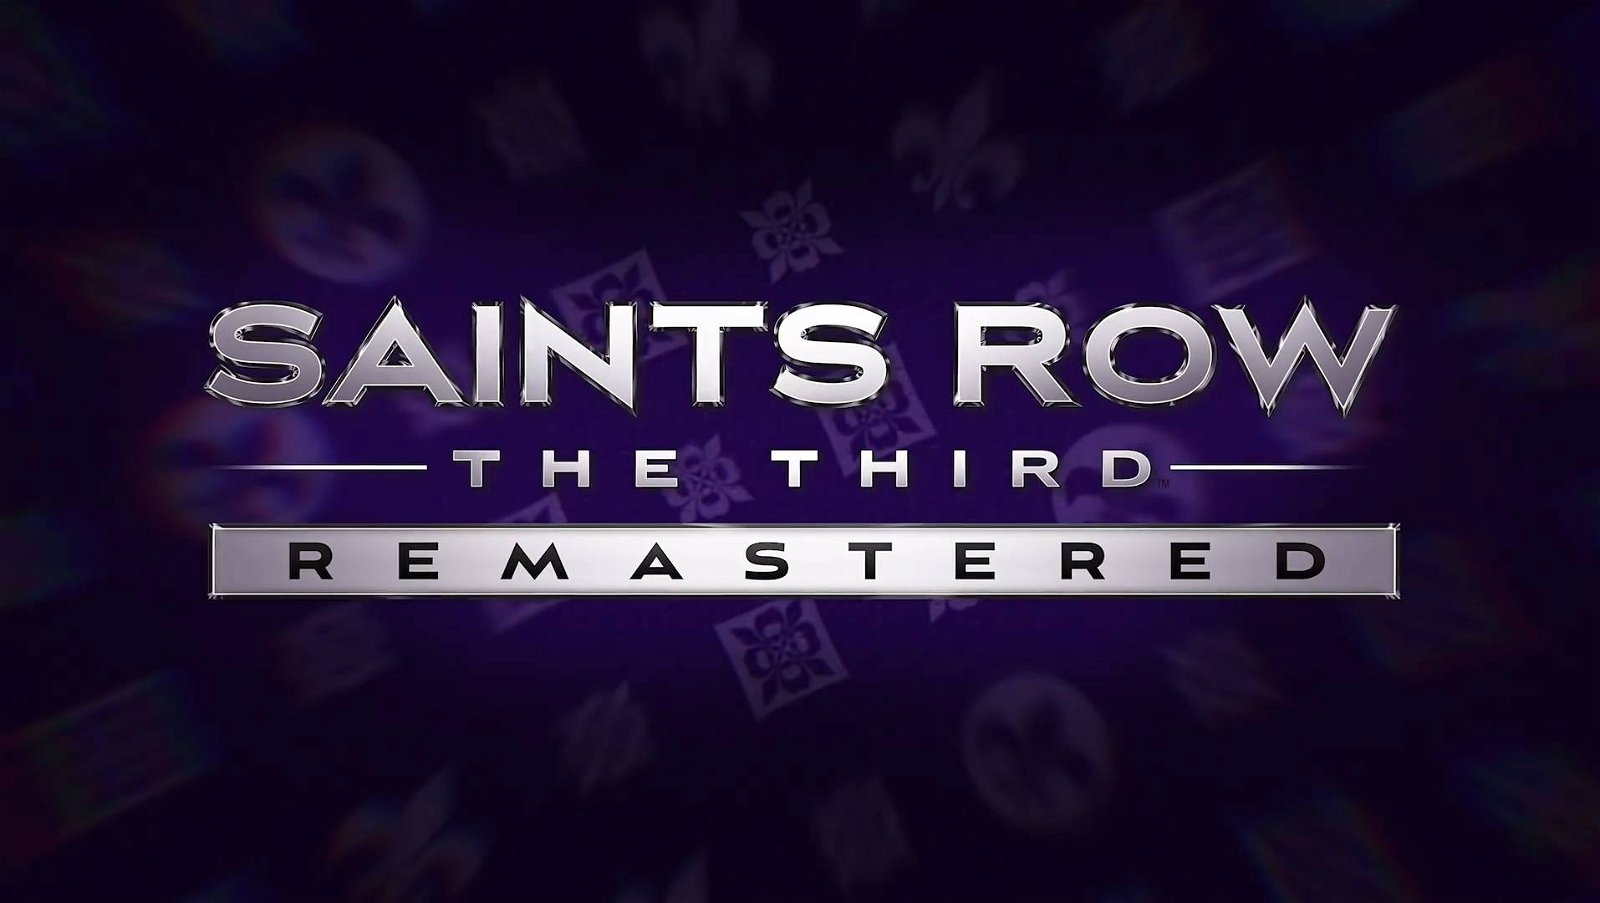 Immagine di Saints Row The Third Remastered annunciato per PS4, Xbox One e PC, ecco la data di uscita